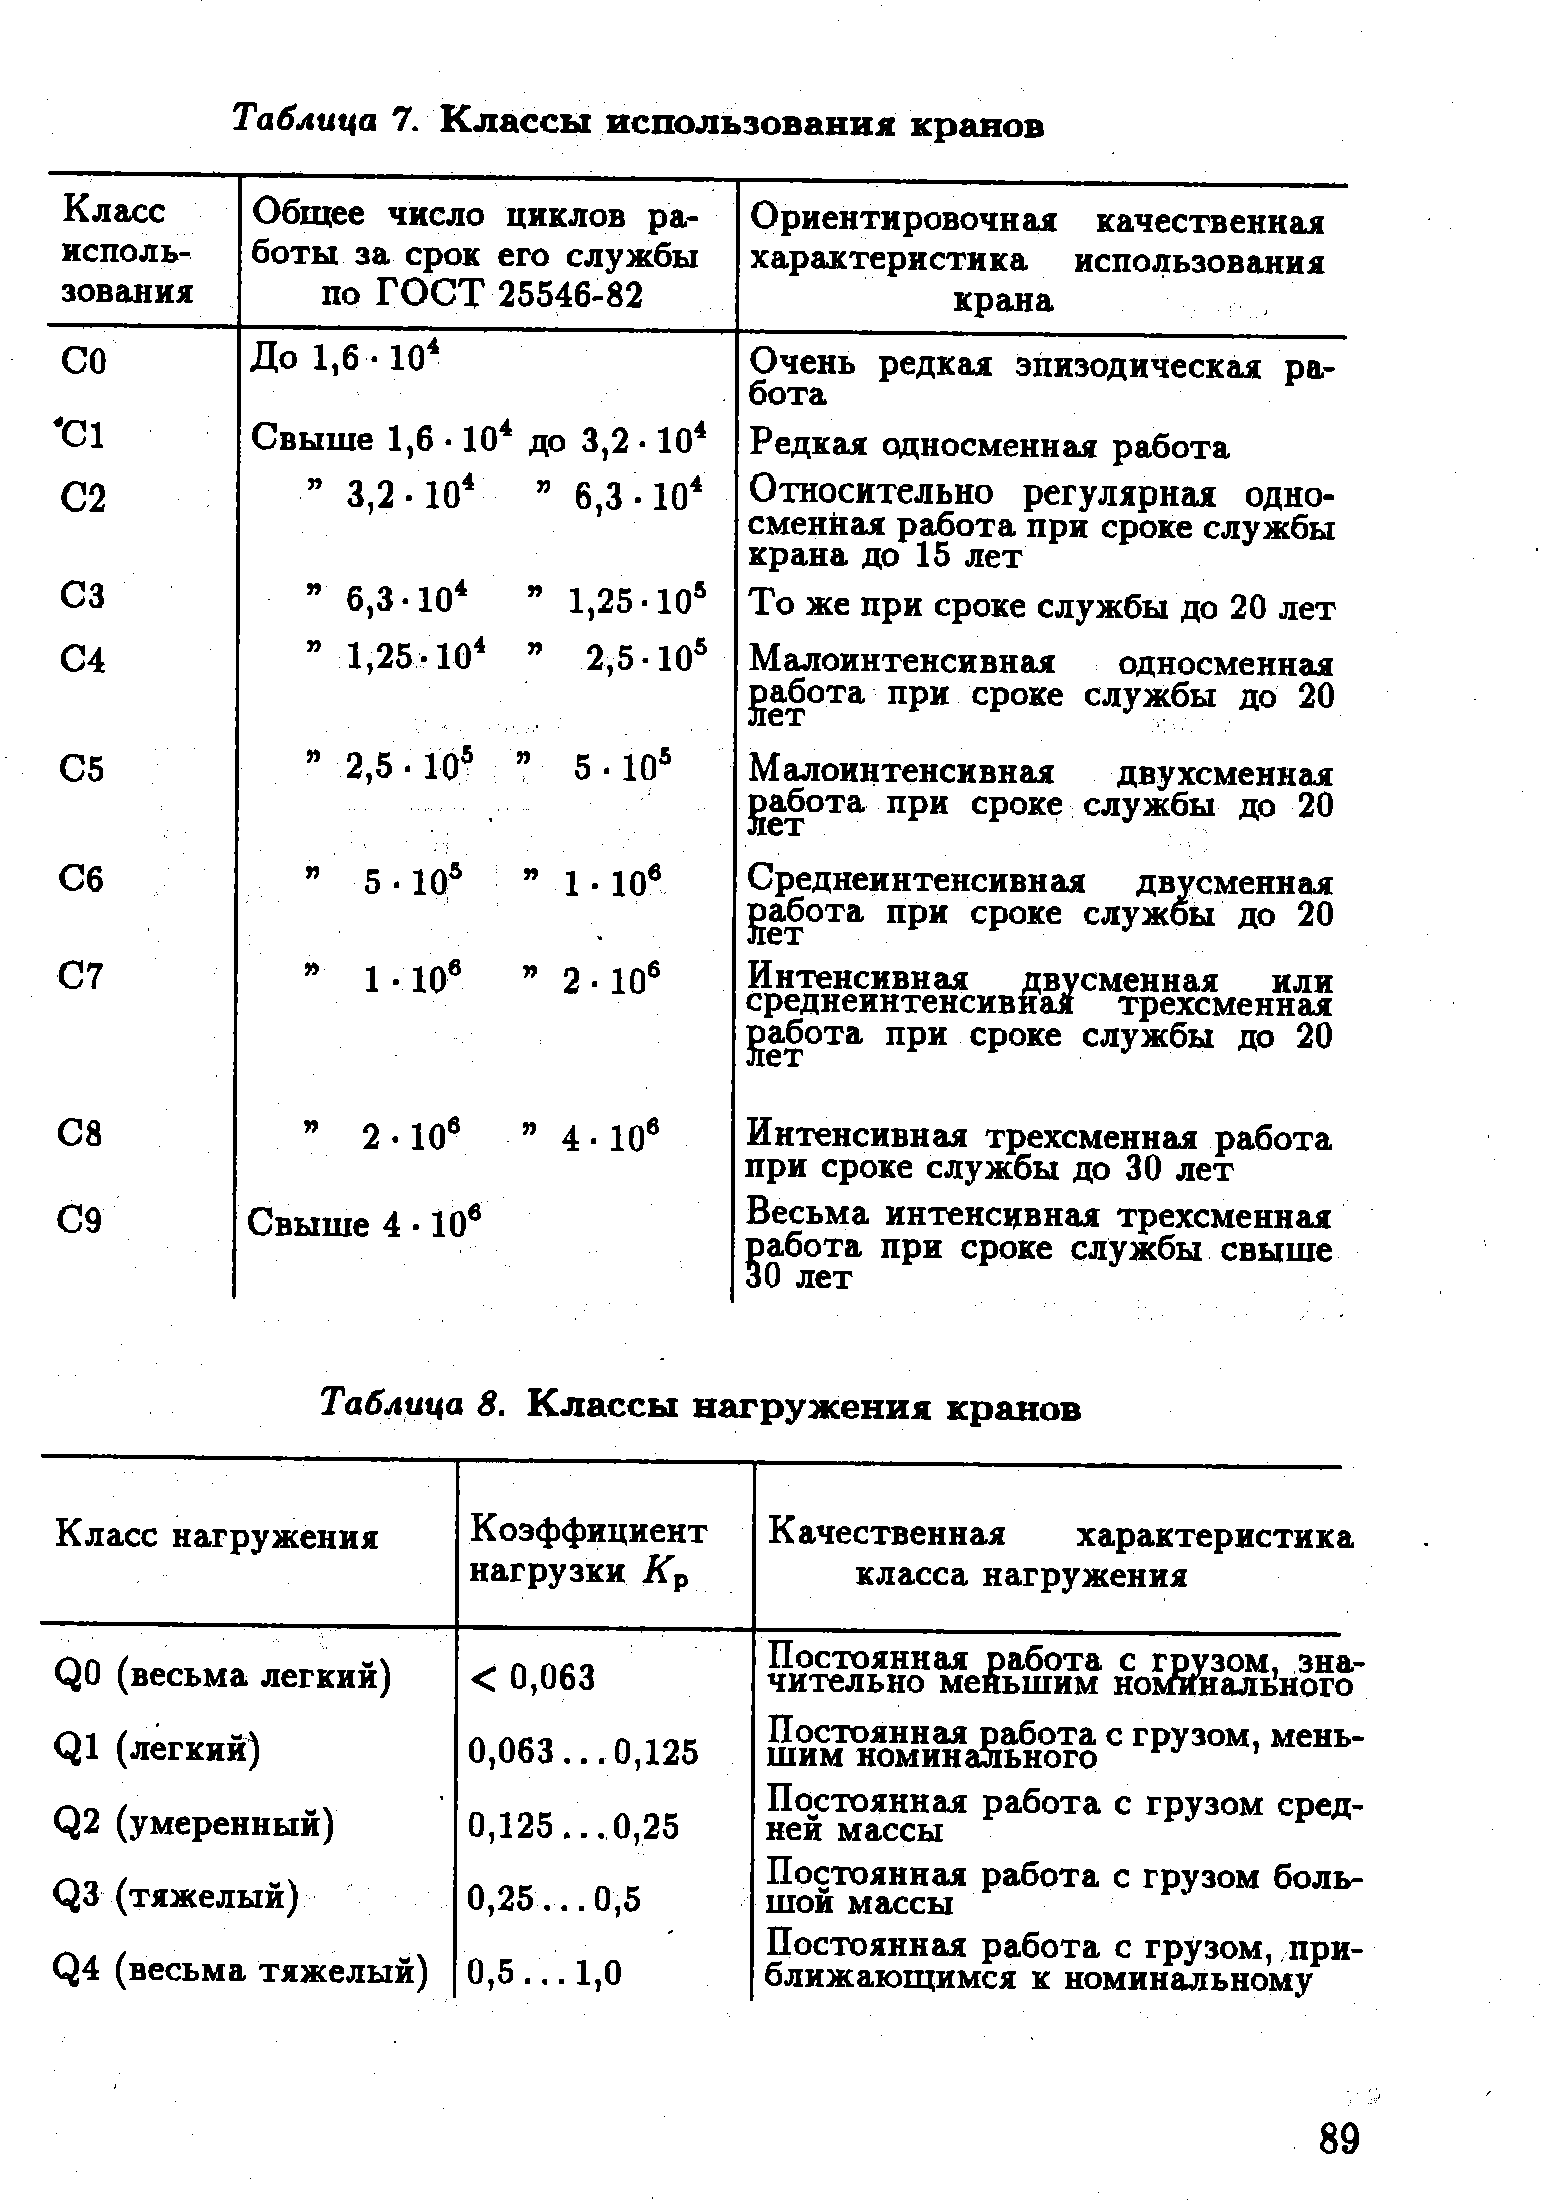 Таблица 8. Классы нагружения кранов
